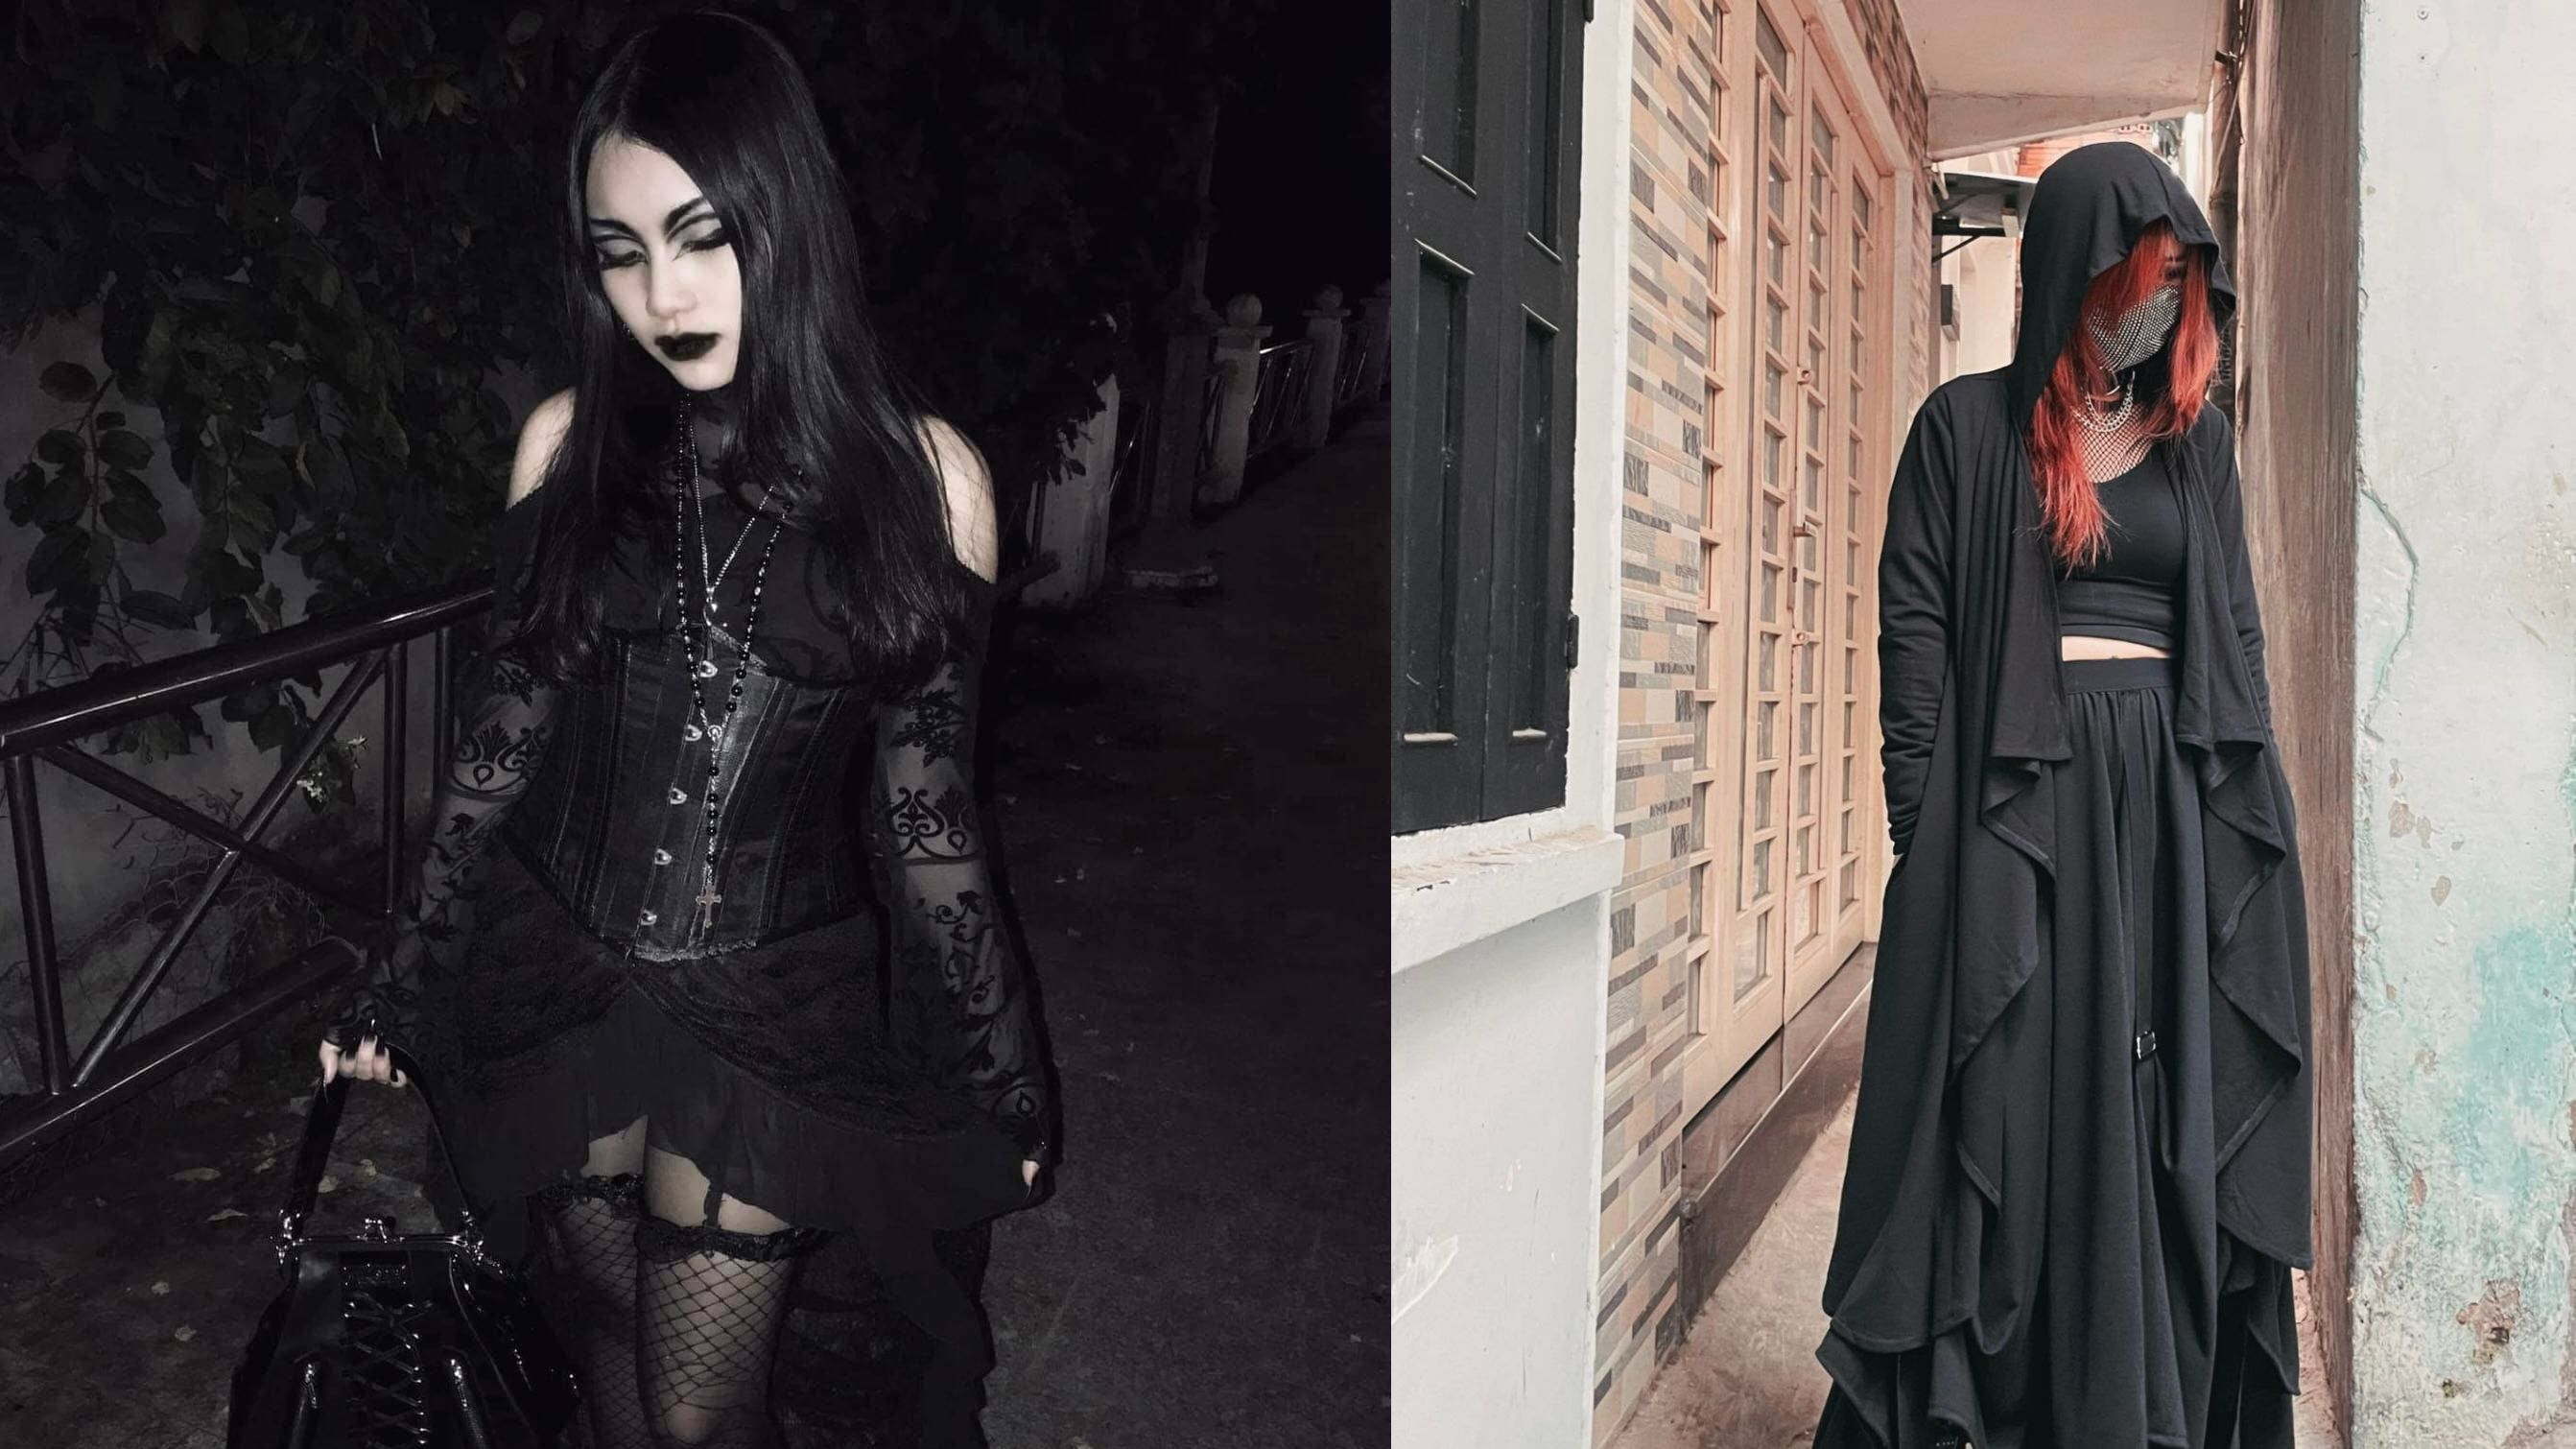 Vì sao người trẻ thích gu thời trang Gothic trong dịp Halloween?